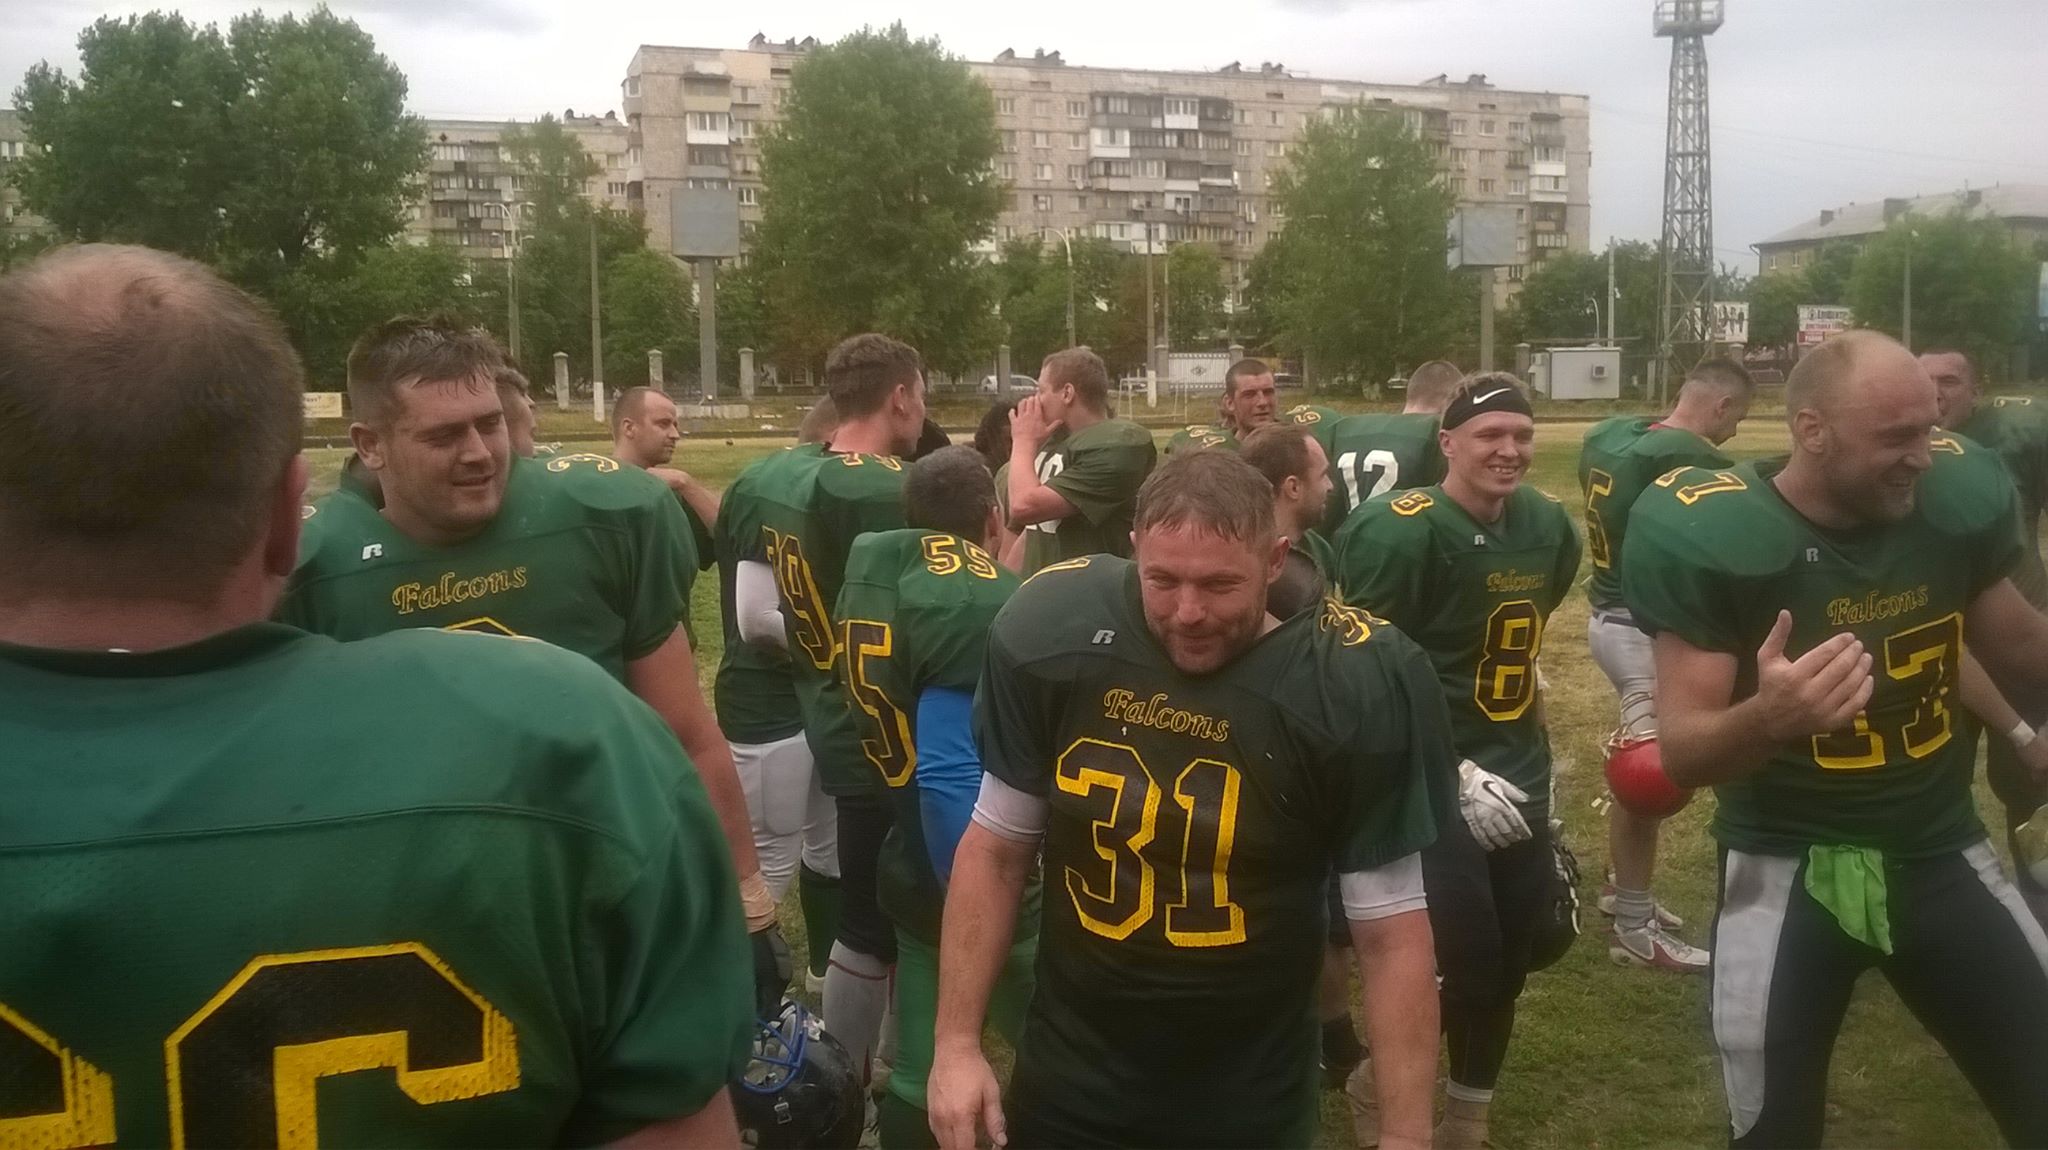 Команда “Лесорубы” (Ужгород) победила титулованный клуб “Бандиты” (Киев) в Чемпионате Украины по американскому футболу.
